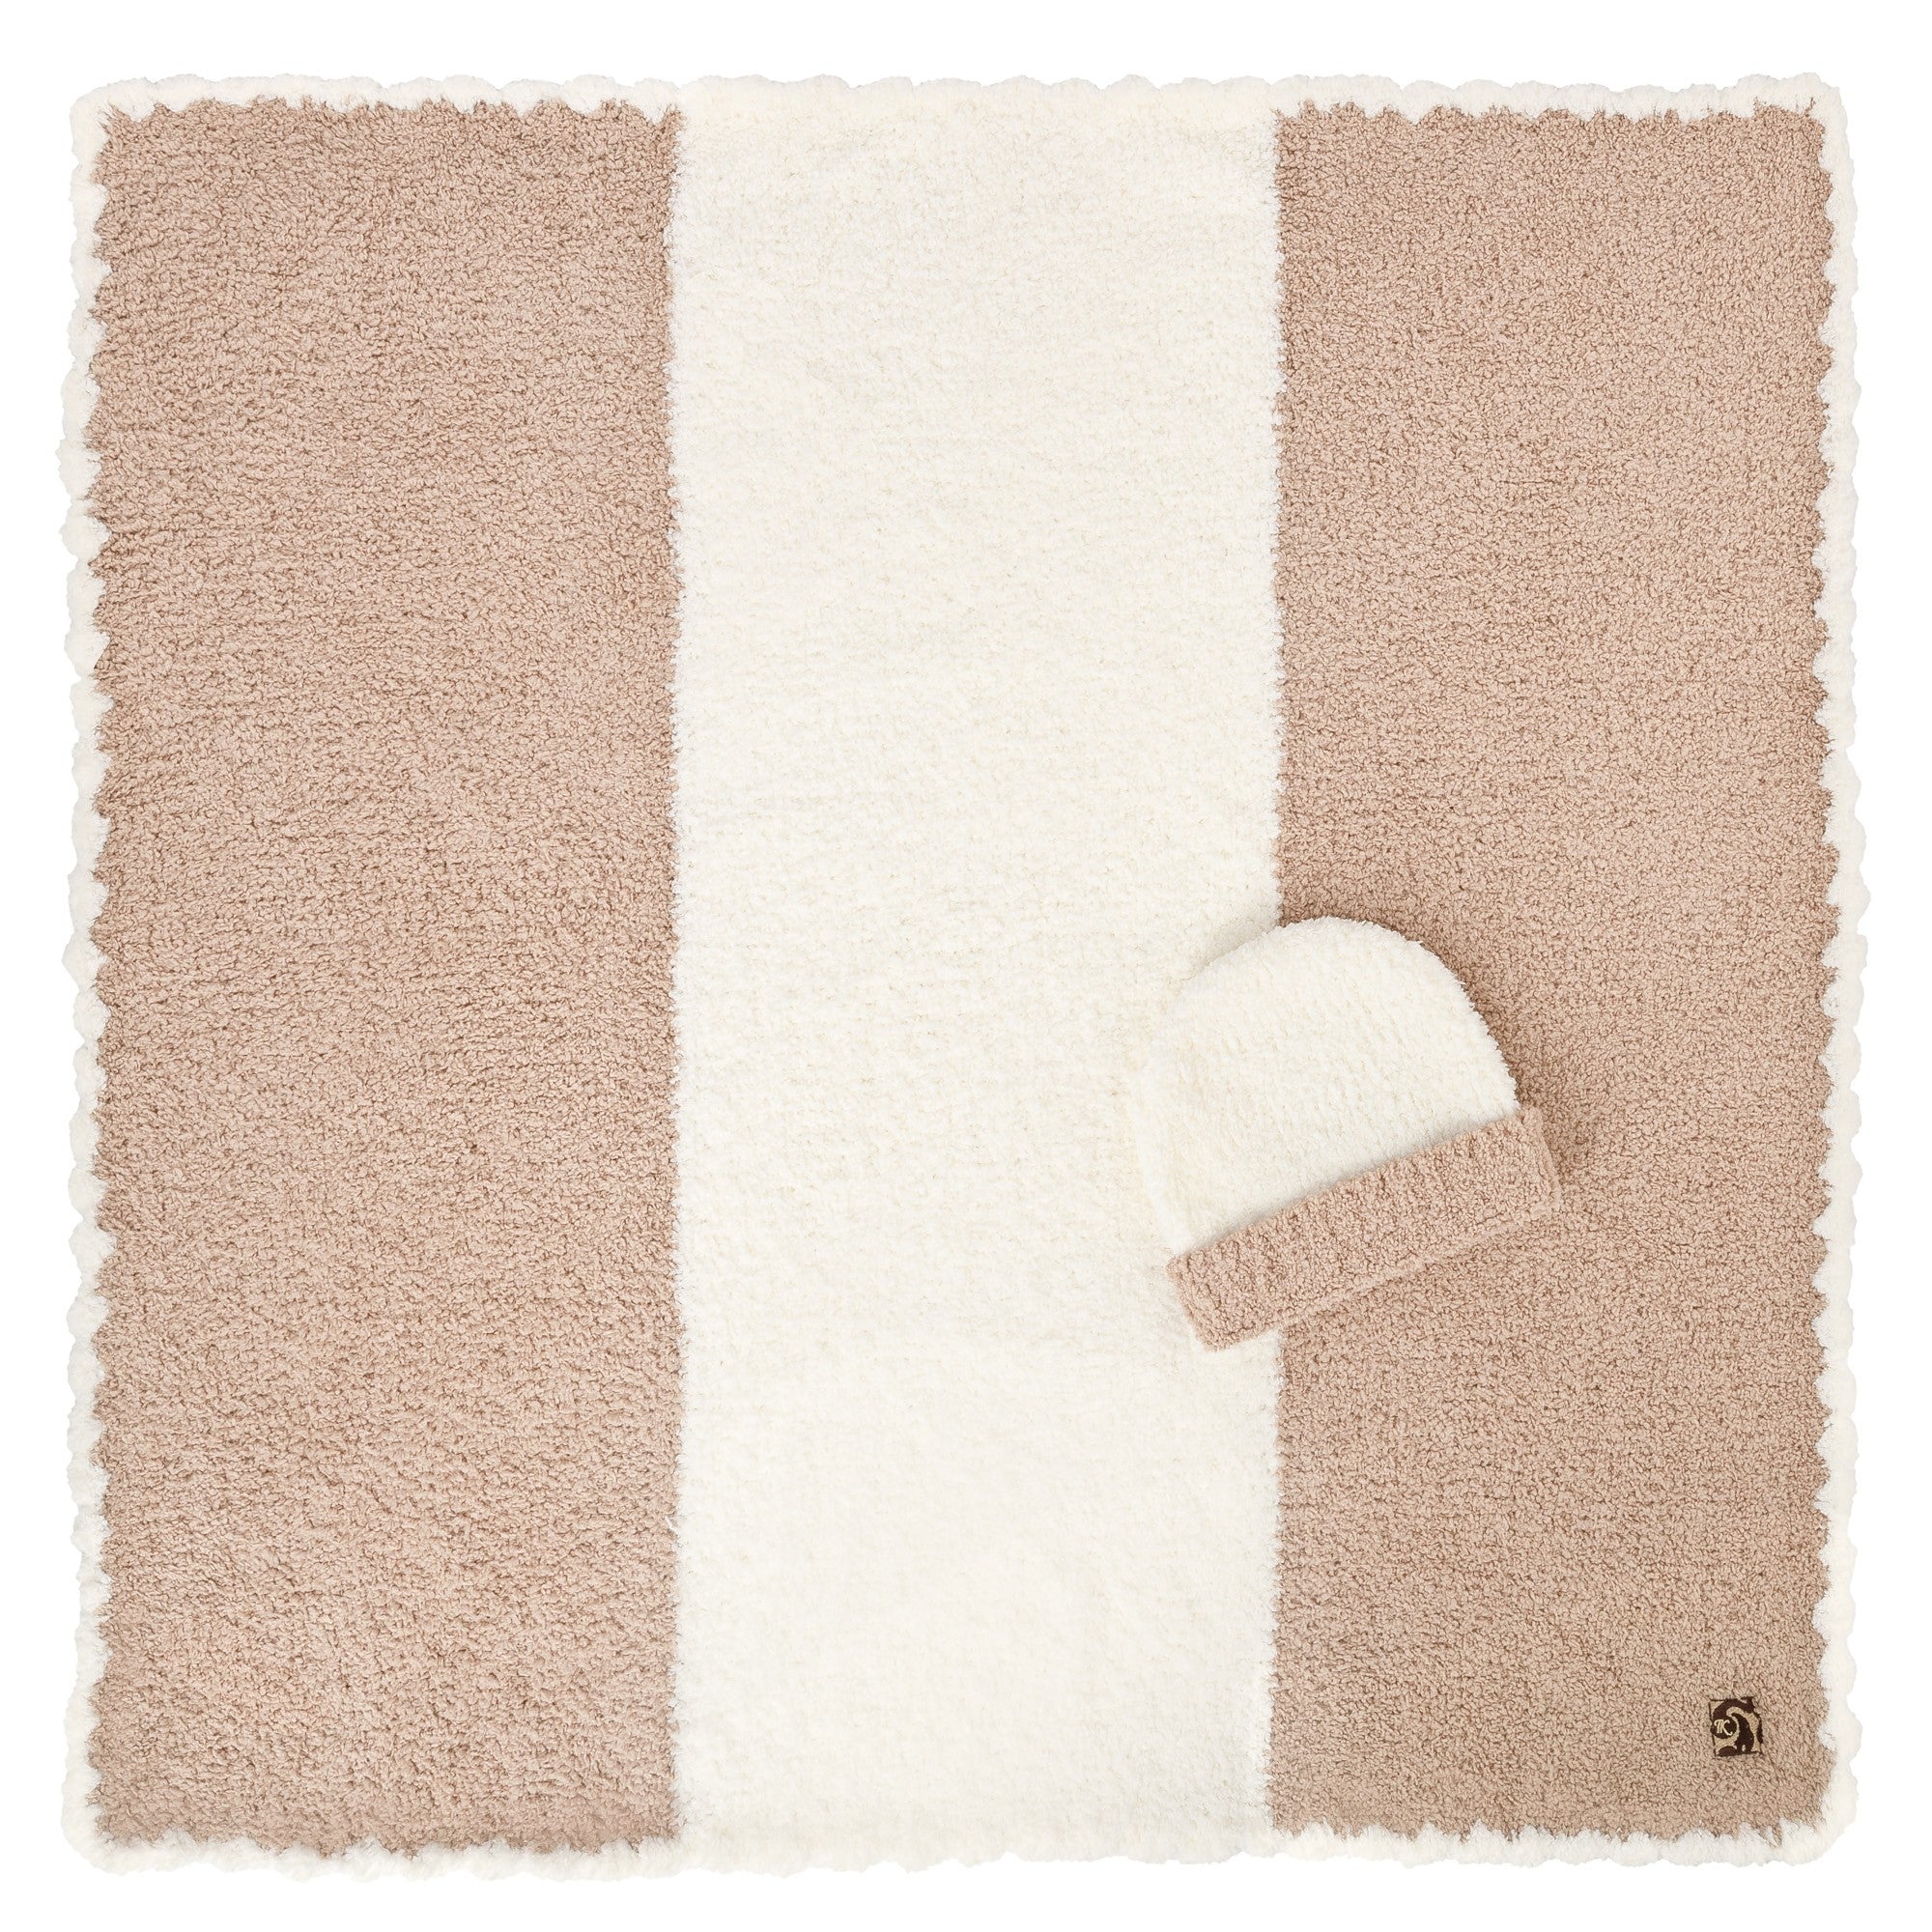 Baby Blankets - Center Stripe w/ Cap